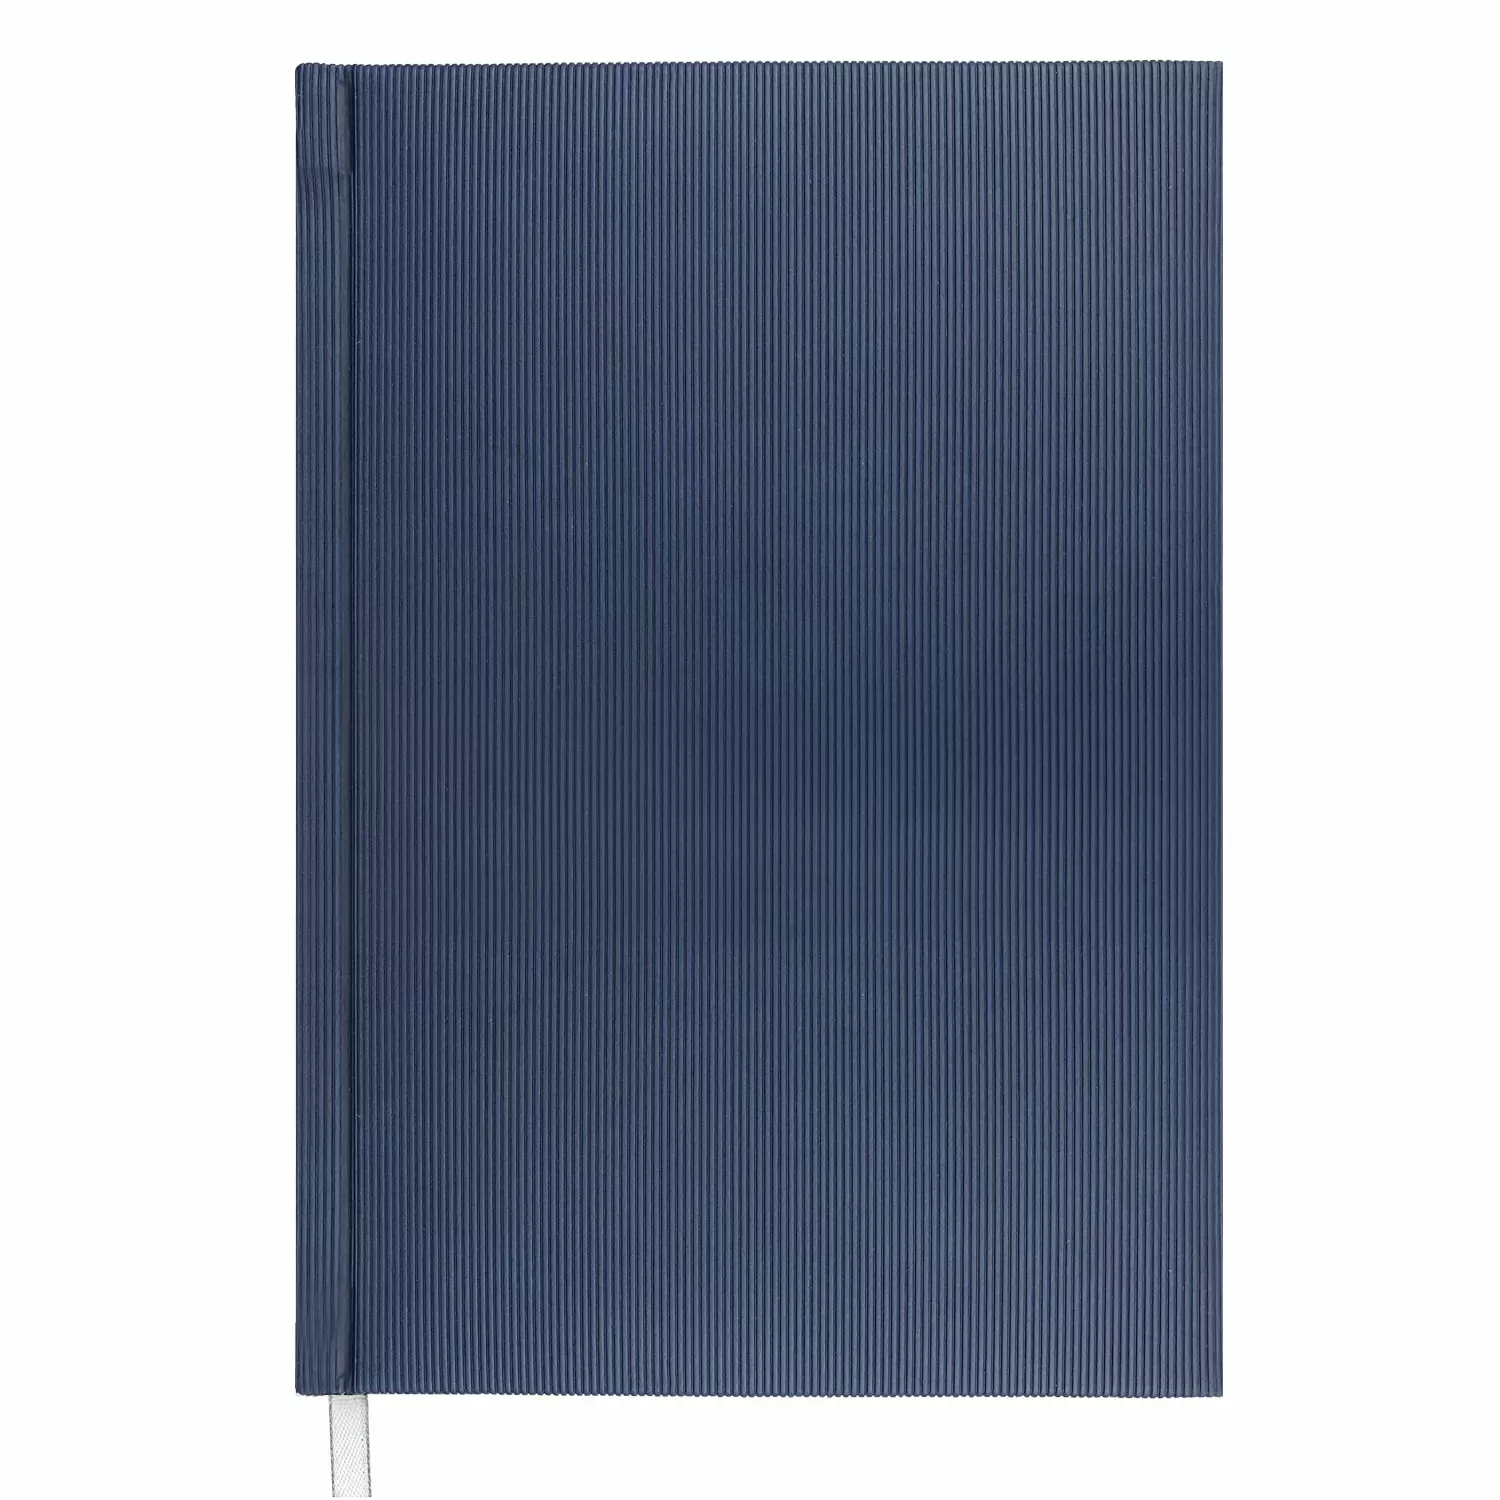 Ежедневник Rain А5 датированный (2021г.) белый блок сине-черная графика без прошивки